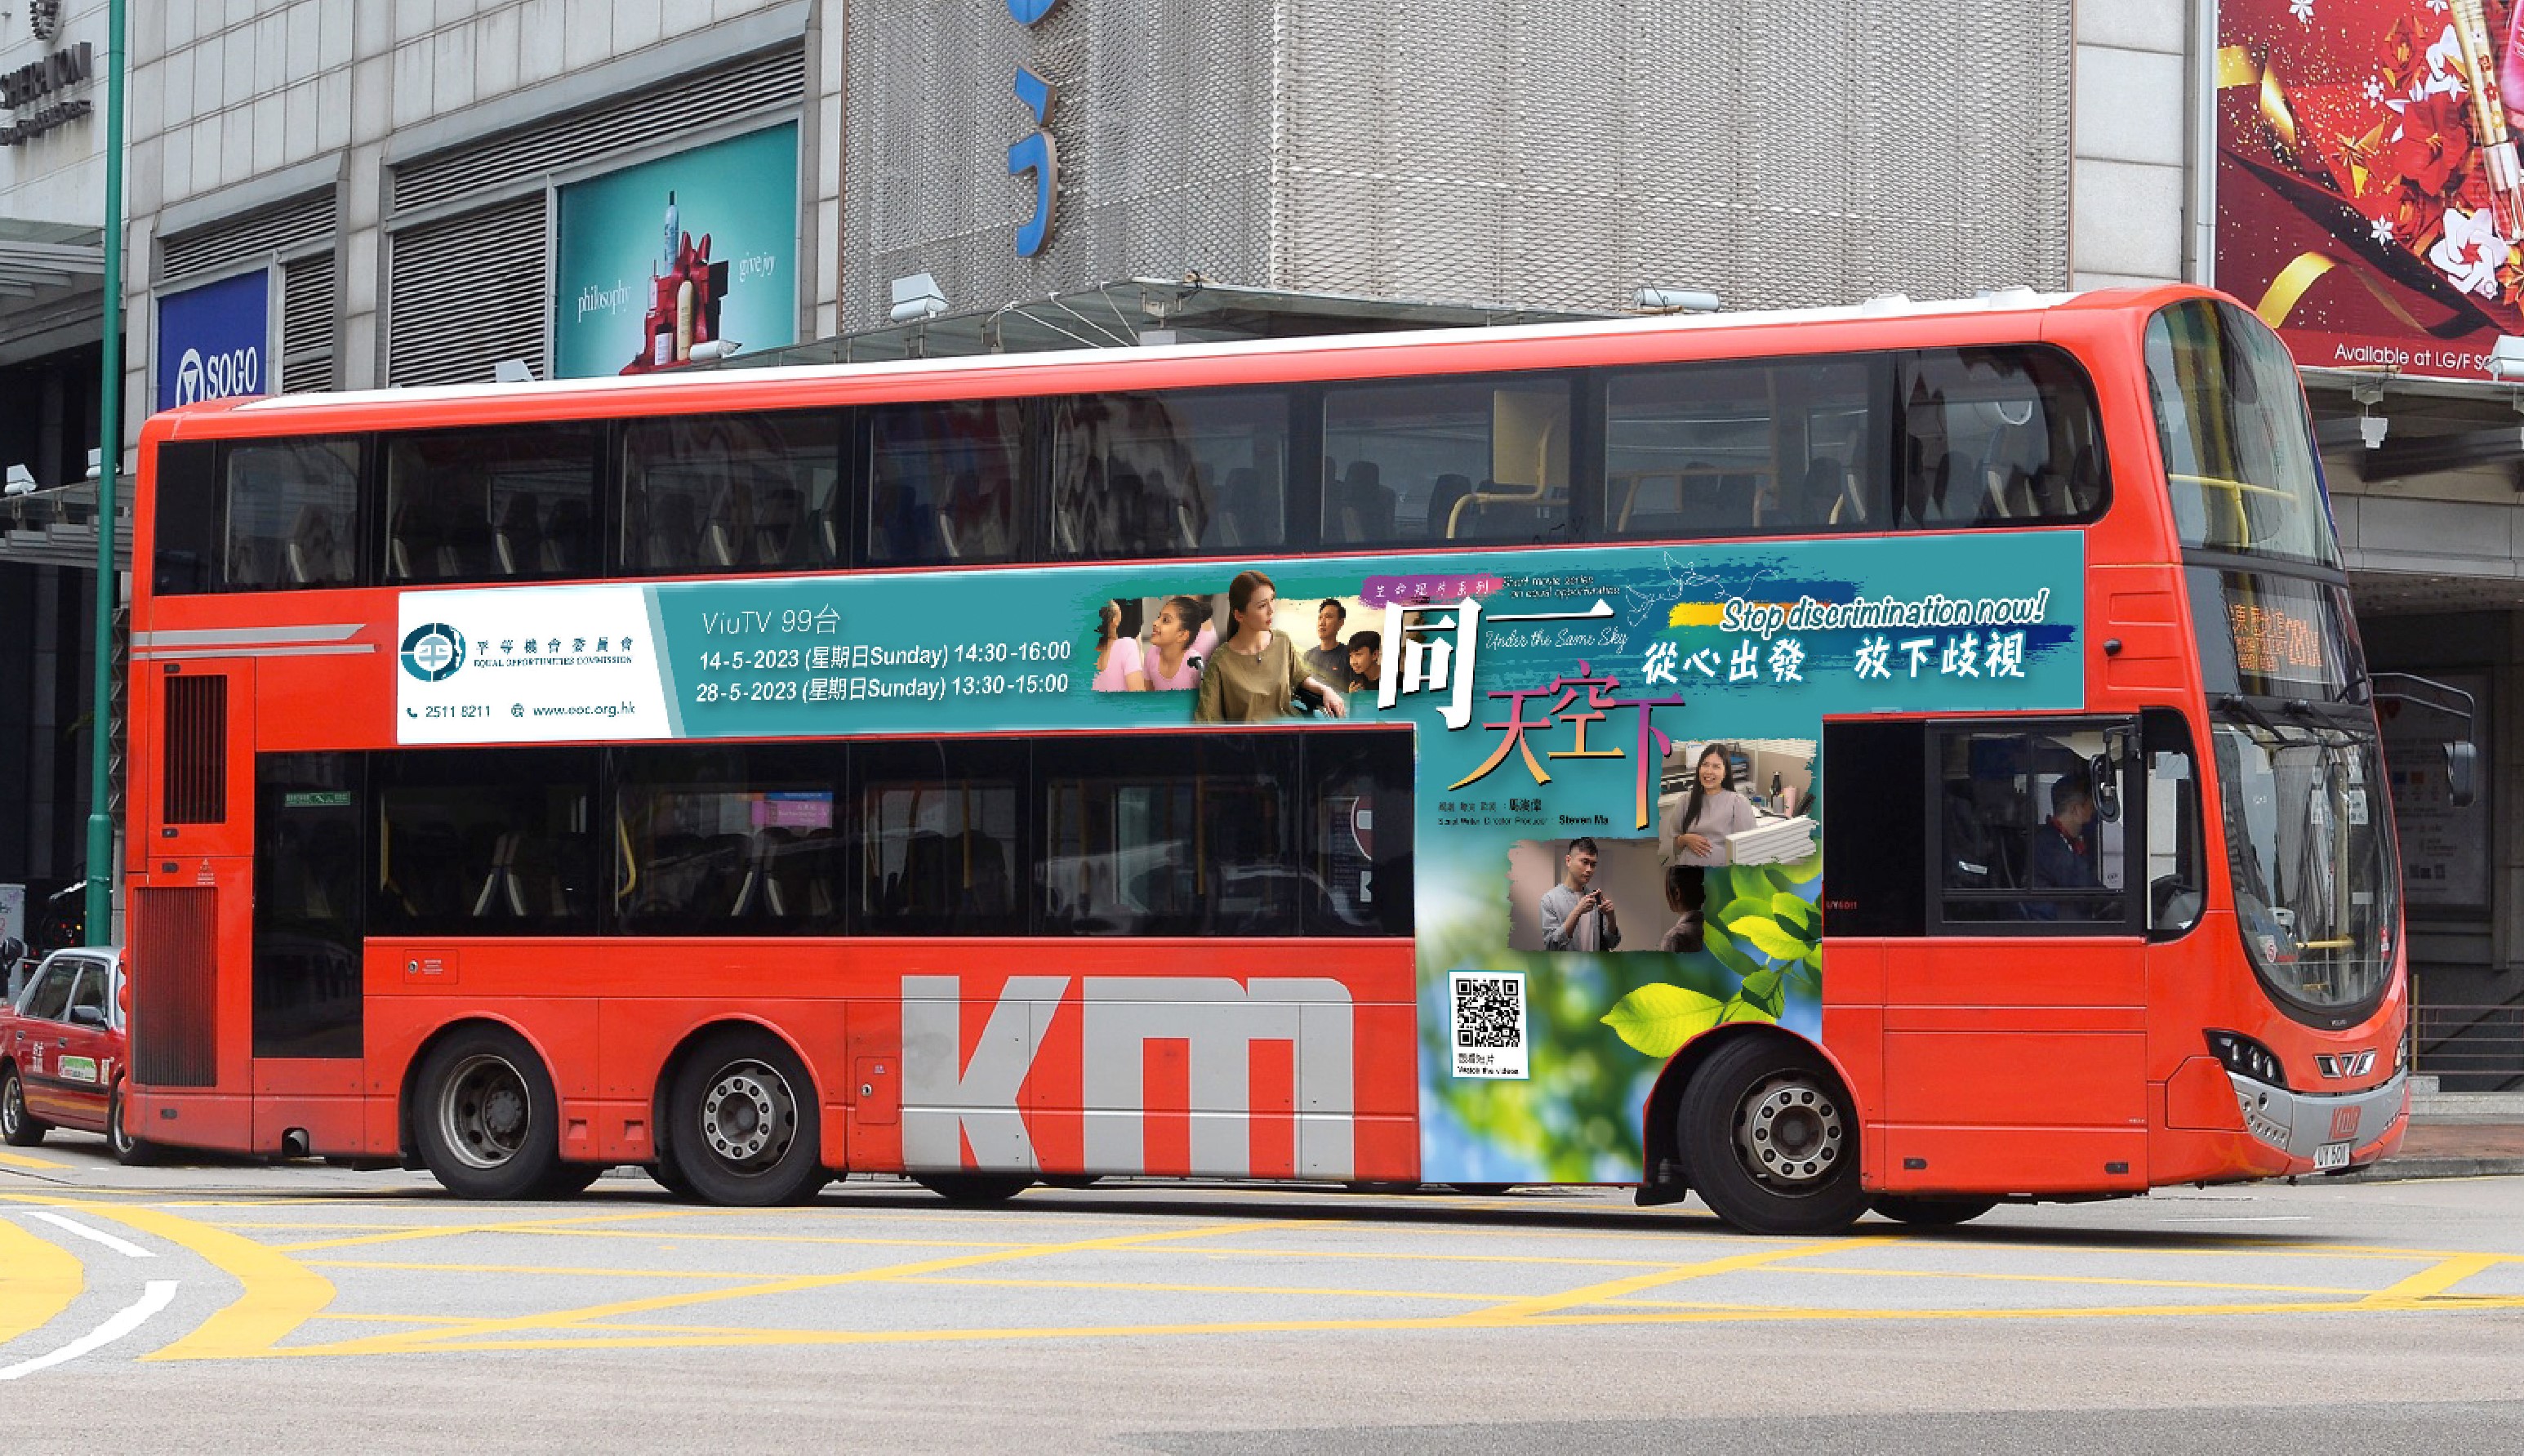 《同一天空下》生命短片系列: 巴士车身广告